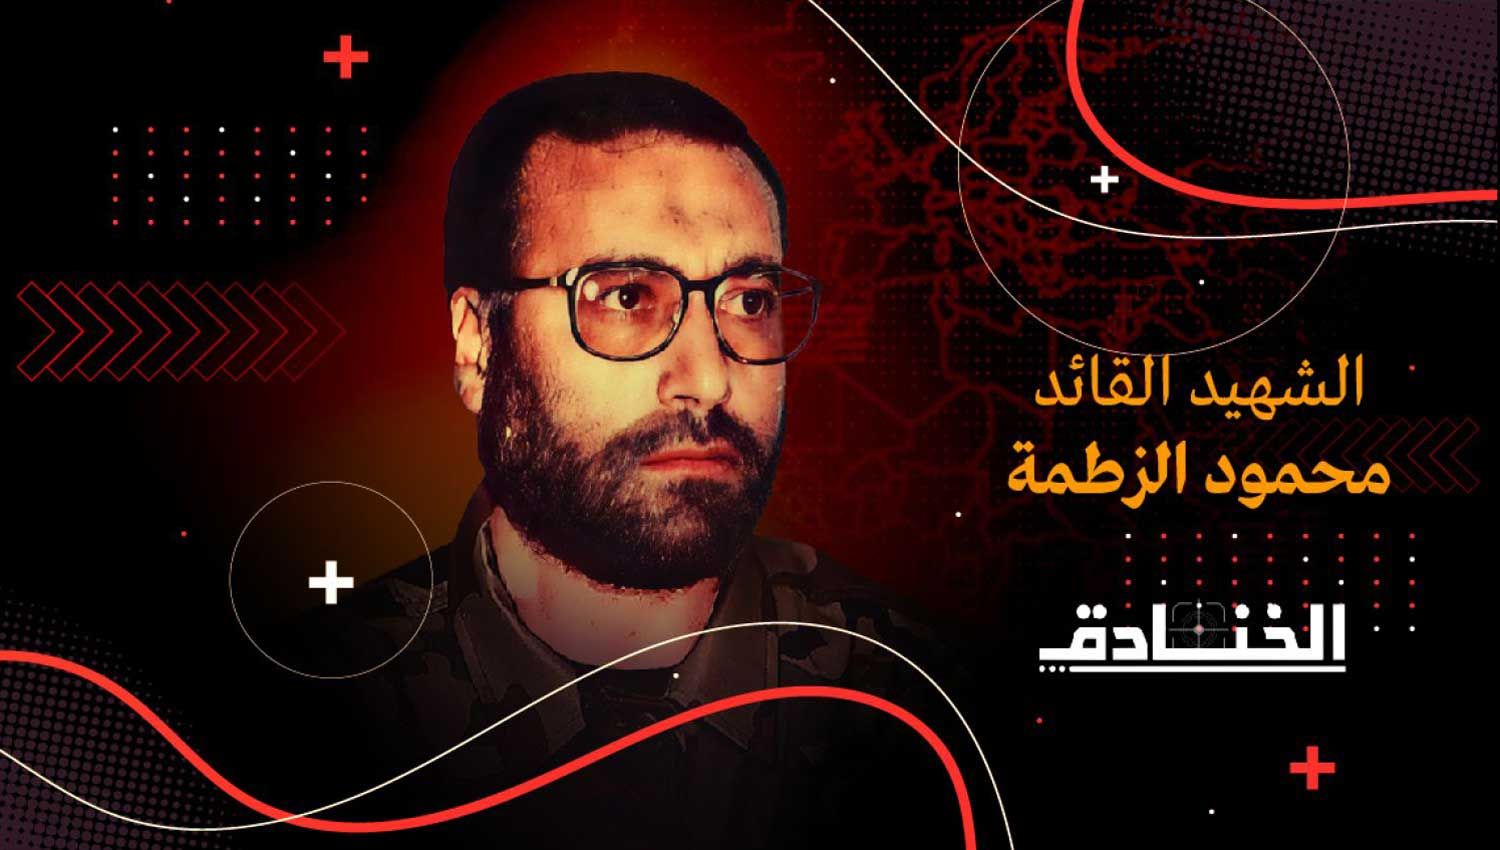 الشهيد محمود الزطمة: المهندس الأول لحركة الجهاد الإسلامي